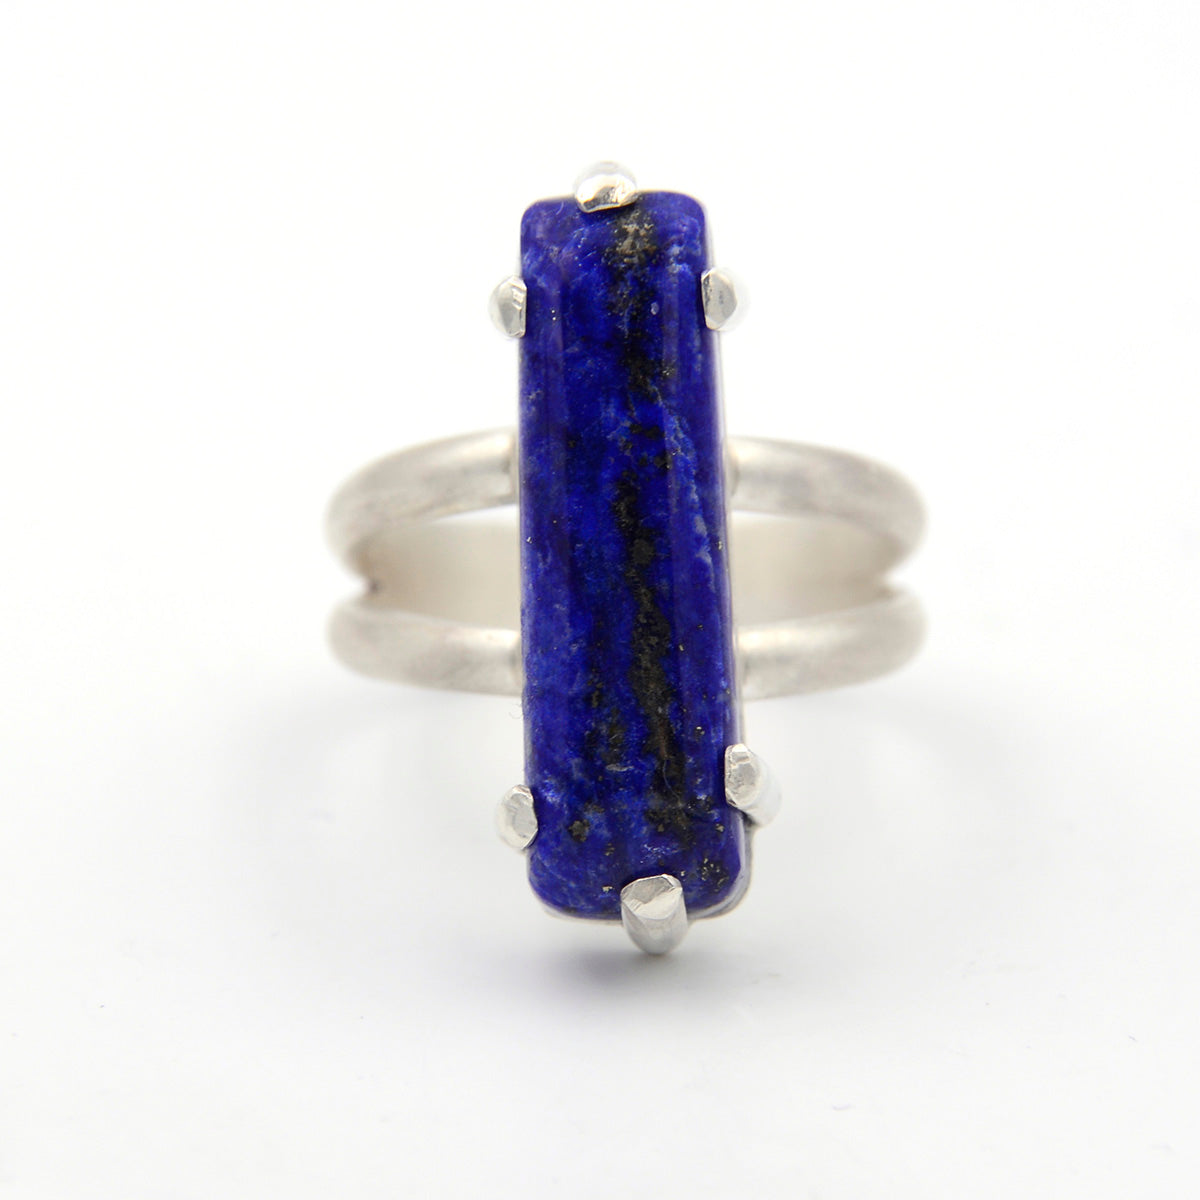 Lapis Lazuli Ring - Size 7.5